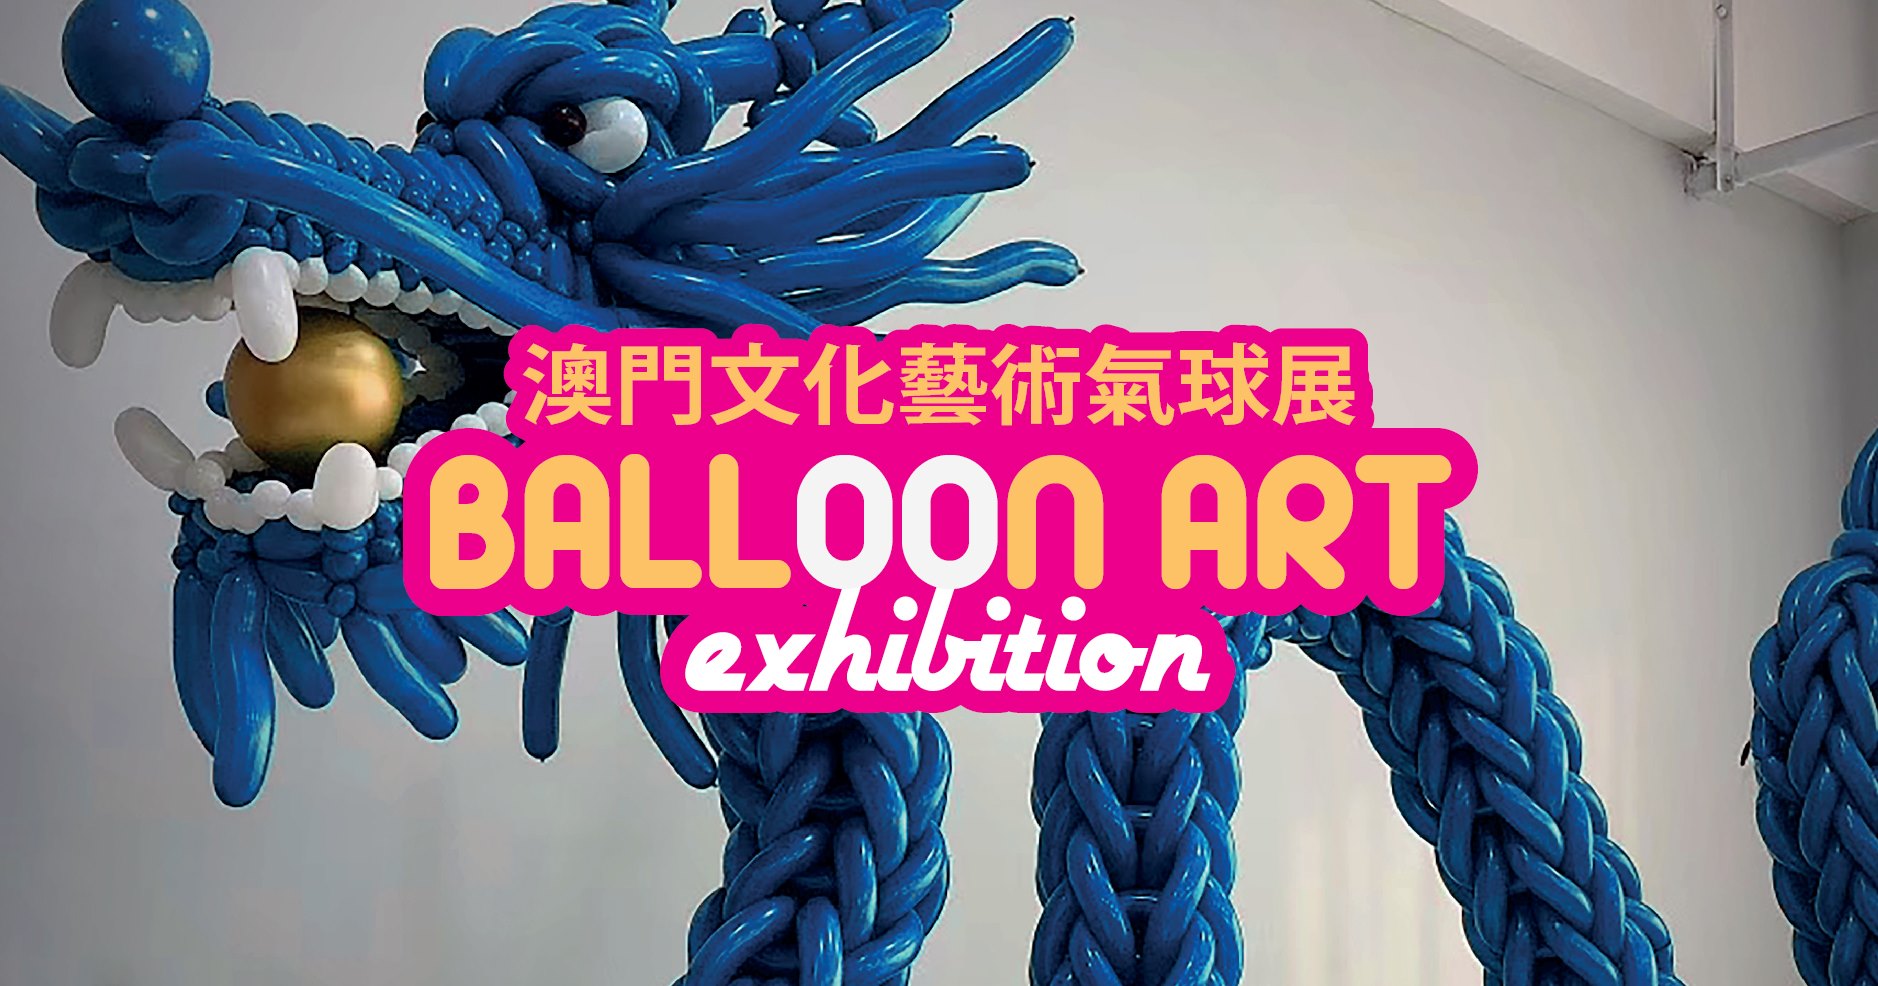 Balloon Exhibition at Rui Cunha Foundation this weekend Macau